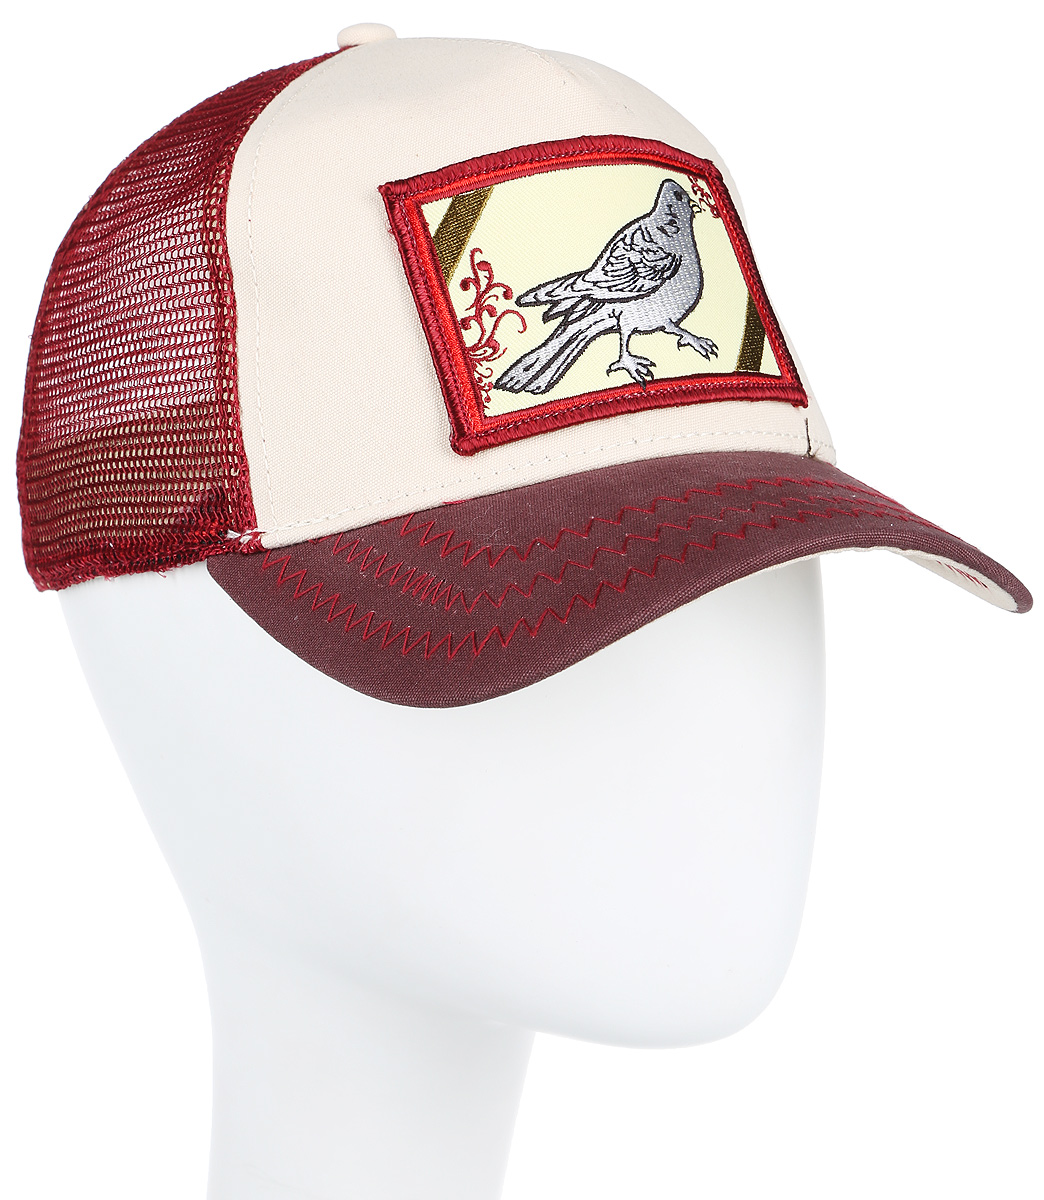 Бейсболка Goorin Brothers Dirty Bird, цвет: красный, кремовый. 42-973-86-00. Размер универсальный